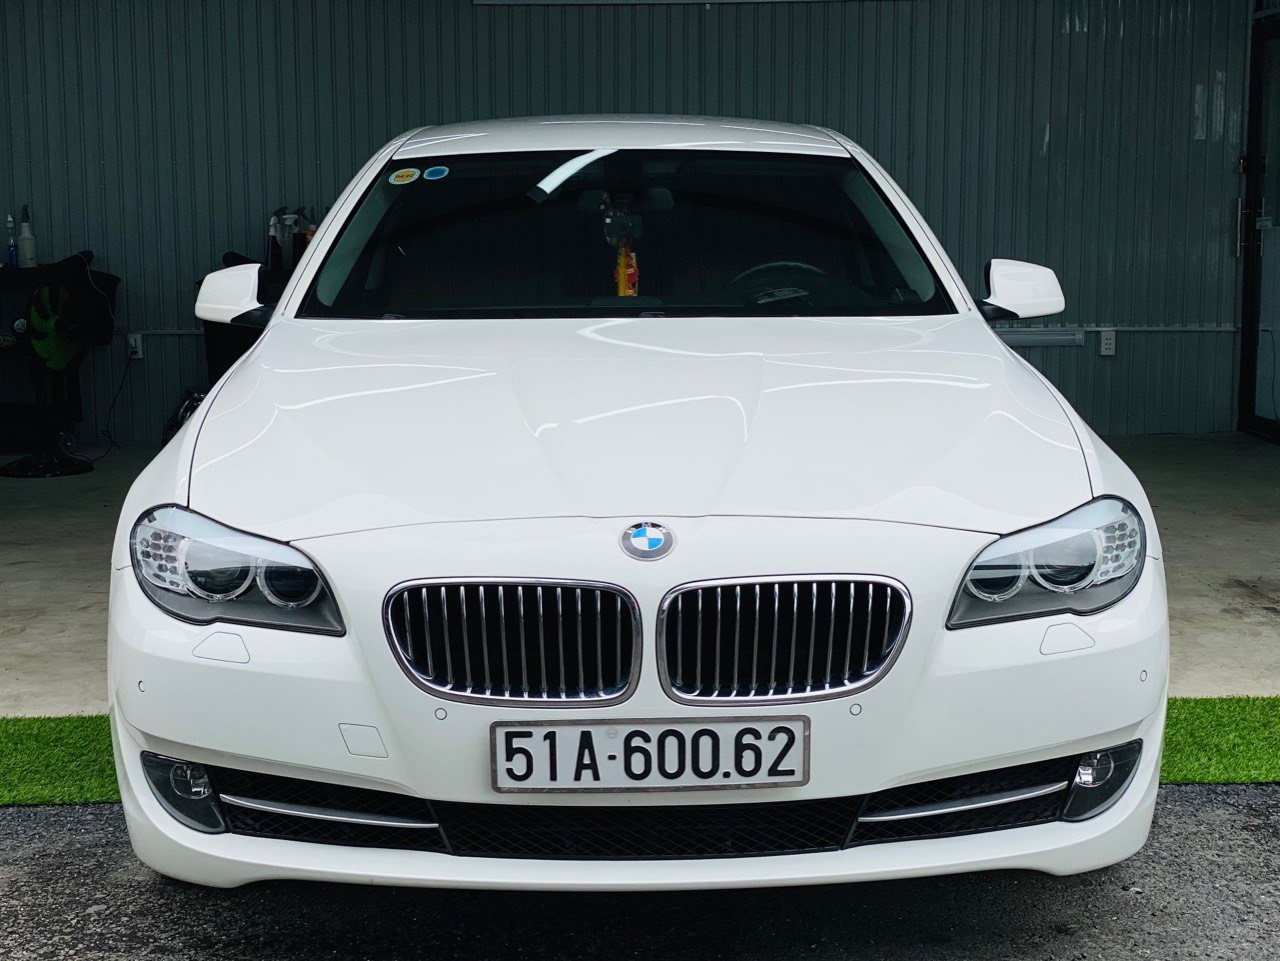 CHÍNH CHỦ CẦN BÁN XE BMW 528 I SẢN SUẤT NĂM 2013